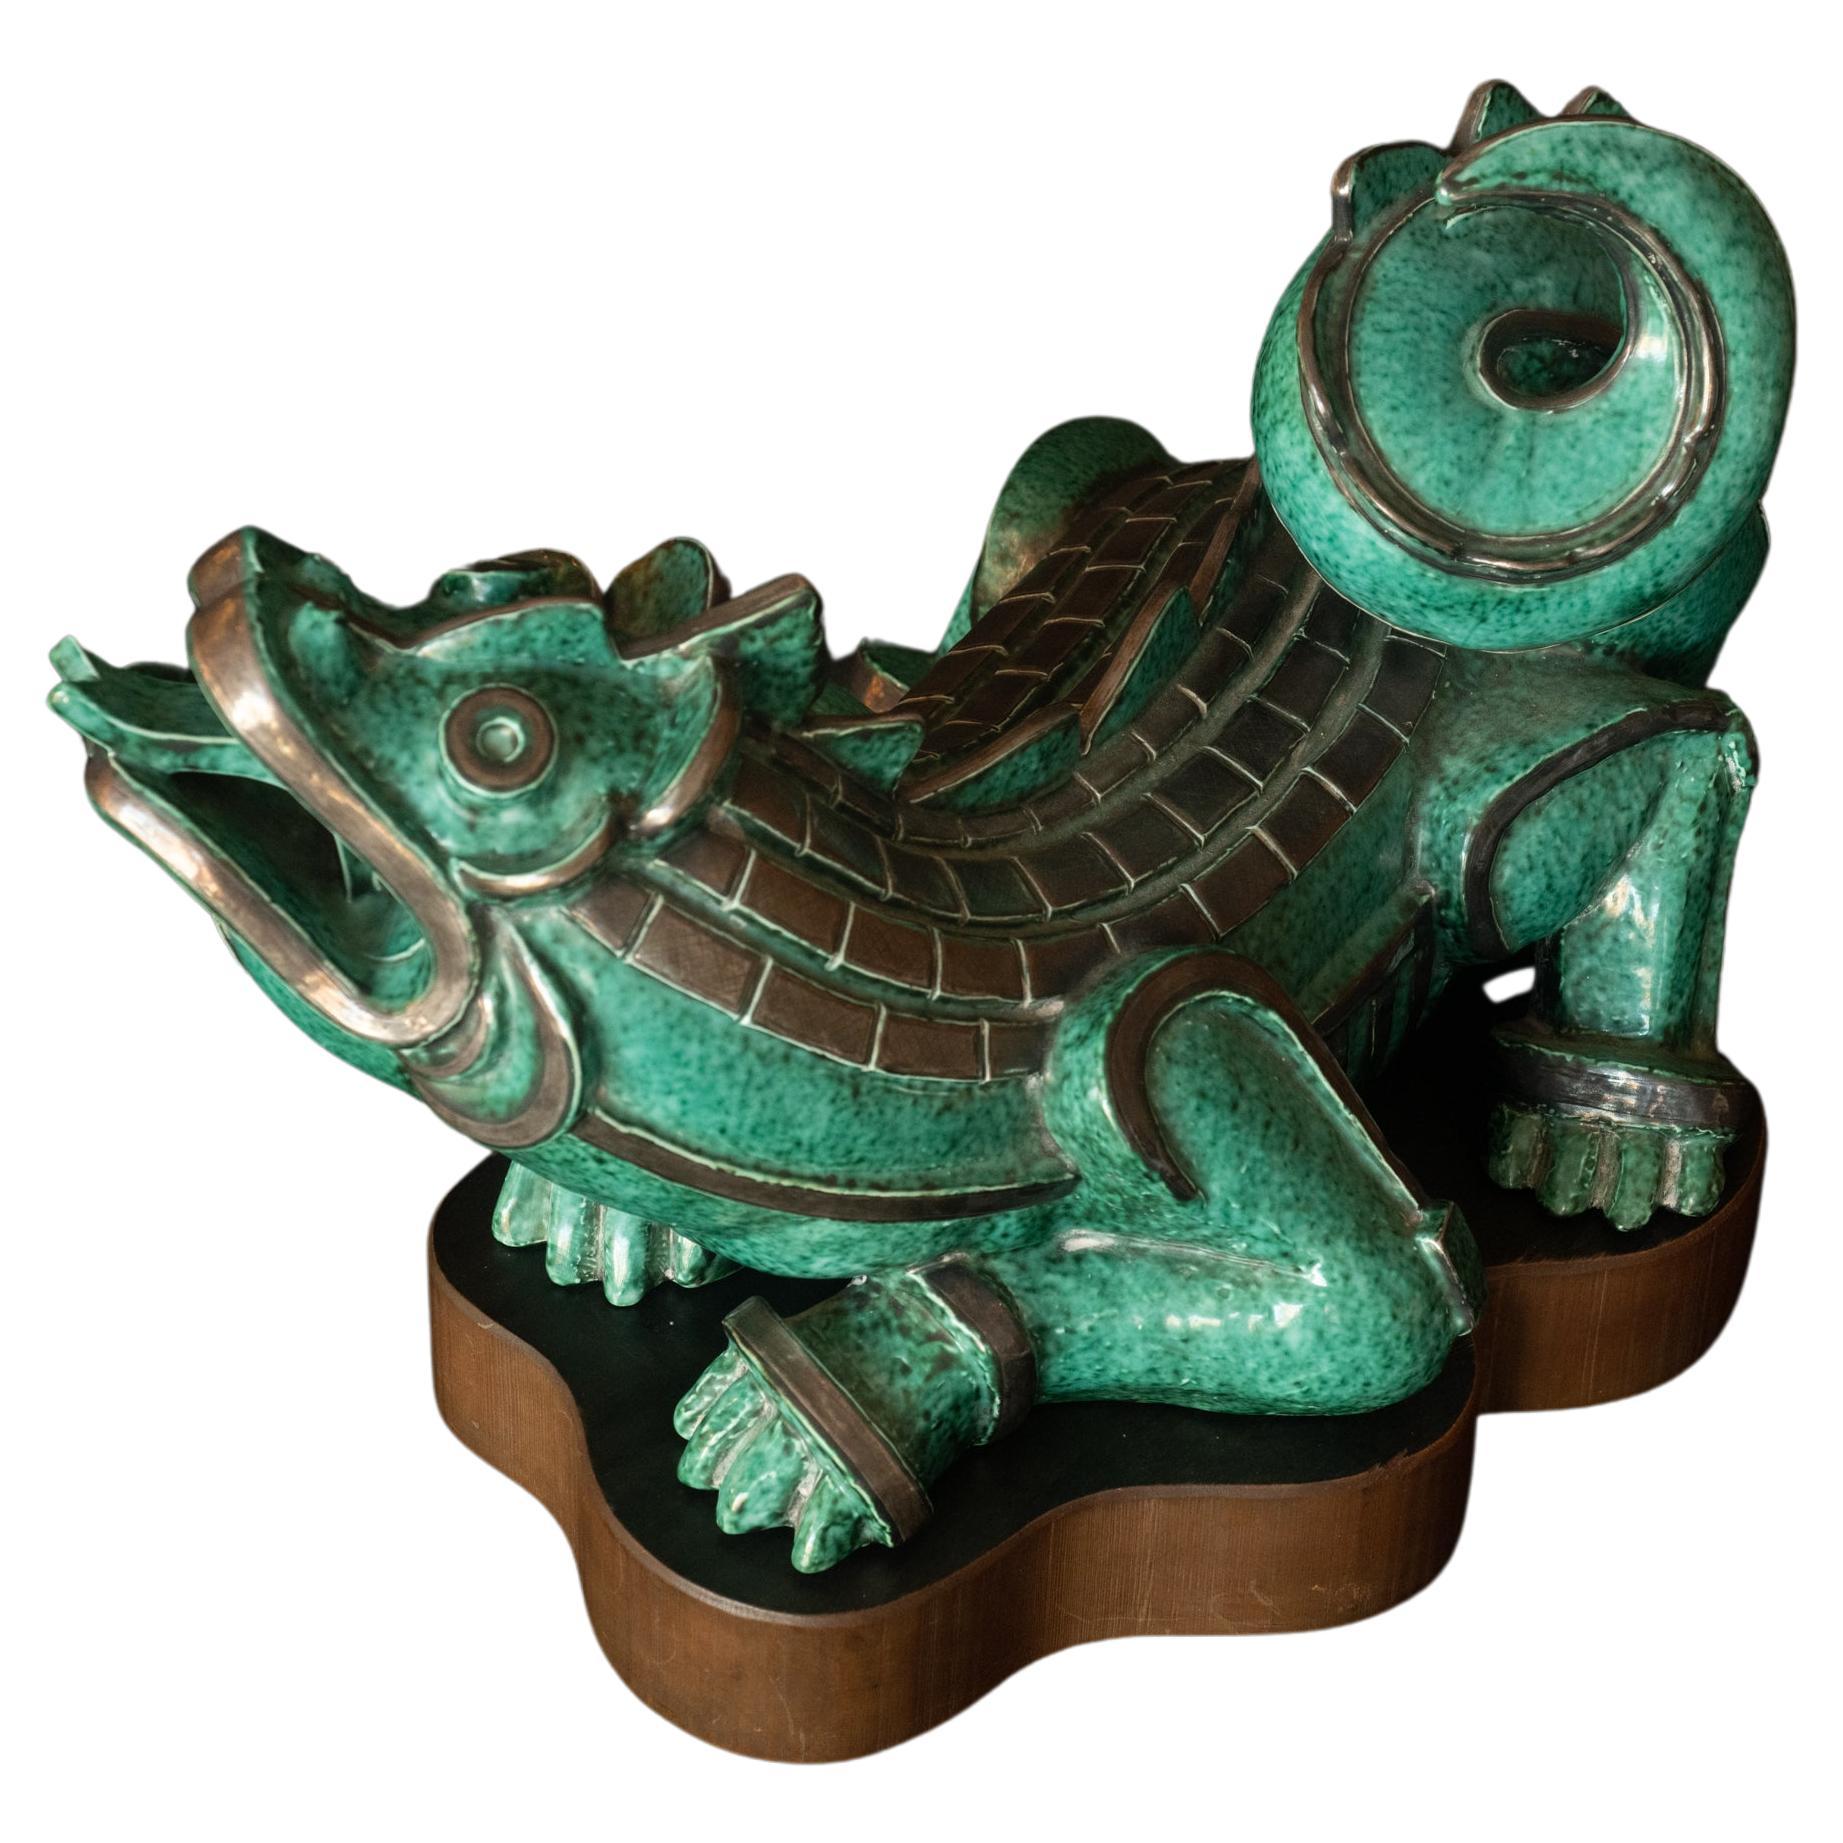 Art Deco "Argenta Dragon" sculpture by Wilhelm Kåge